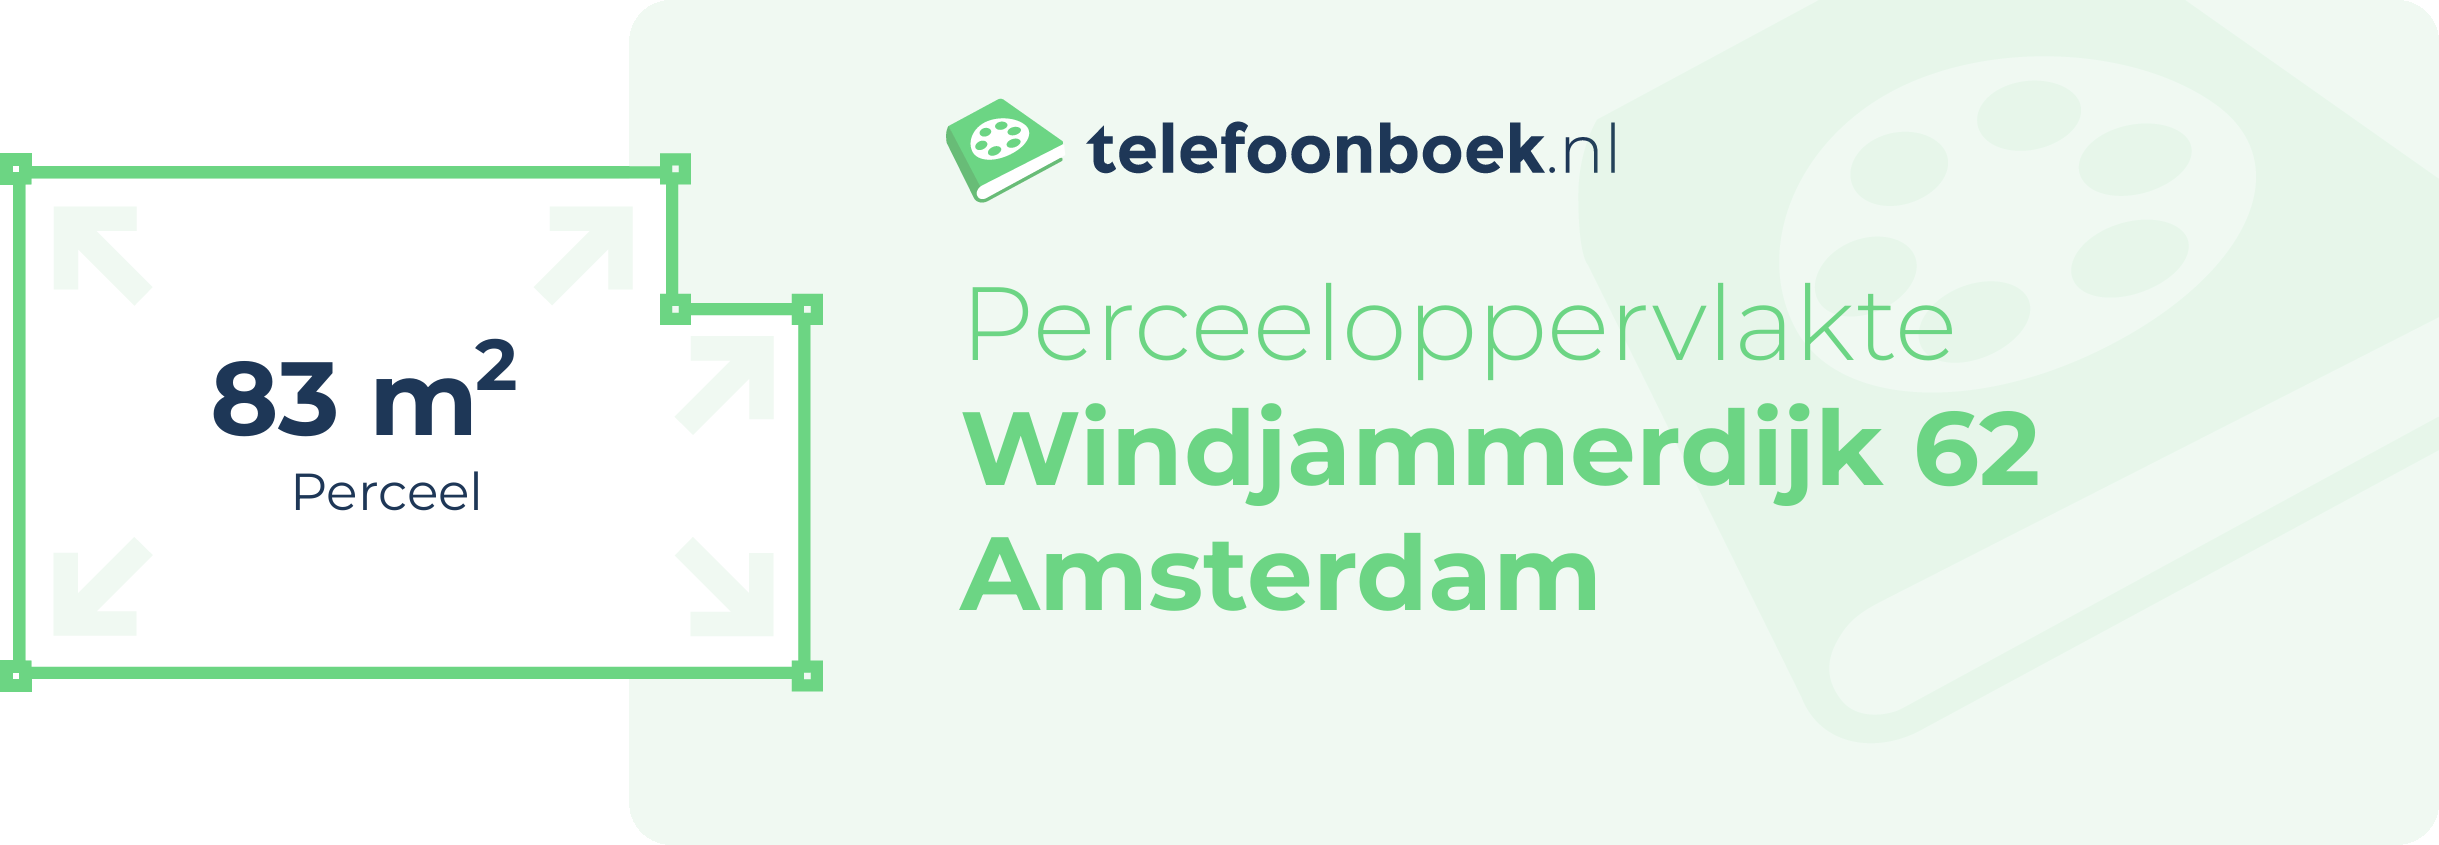 Perceeloppervlakte Windjammerdijk 62 Amsterdam